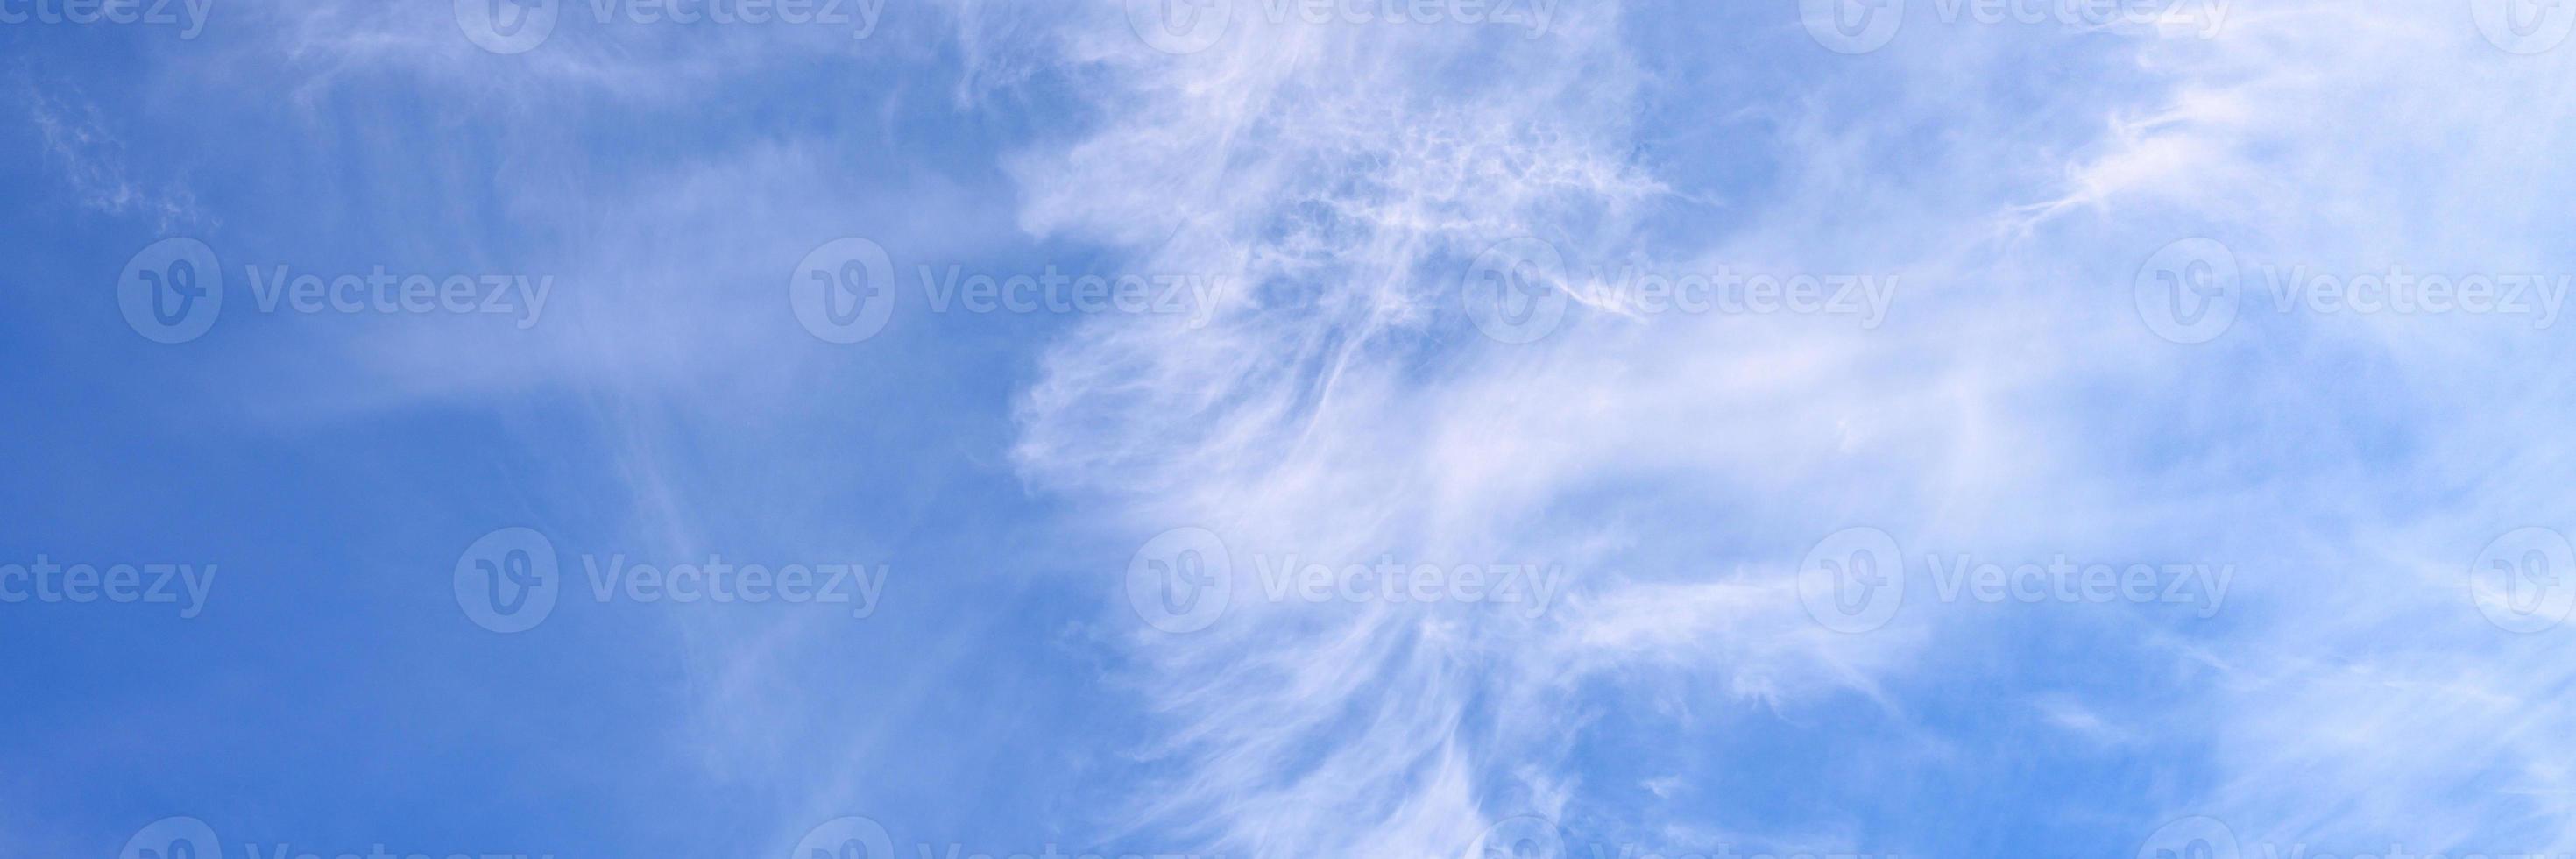 lindas nuvens de céu azul foto